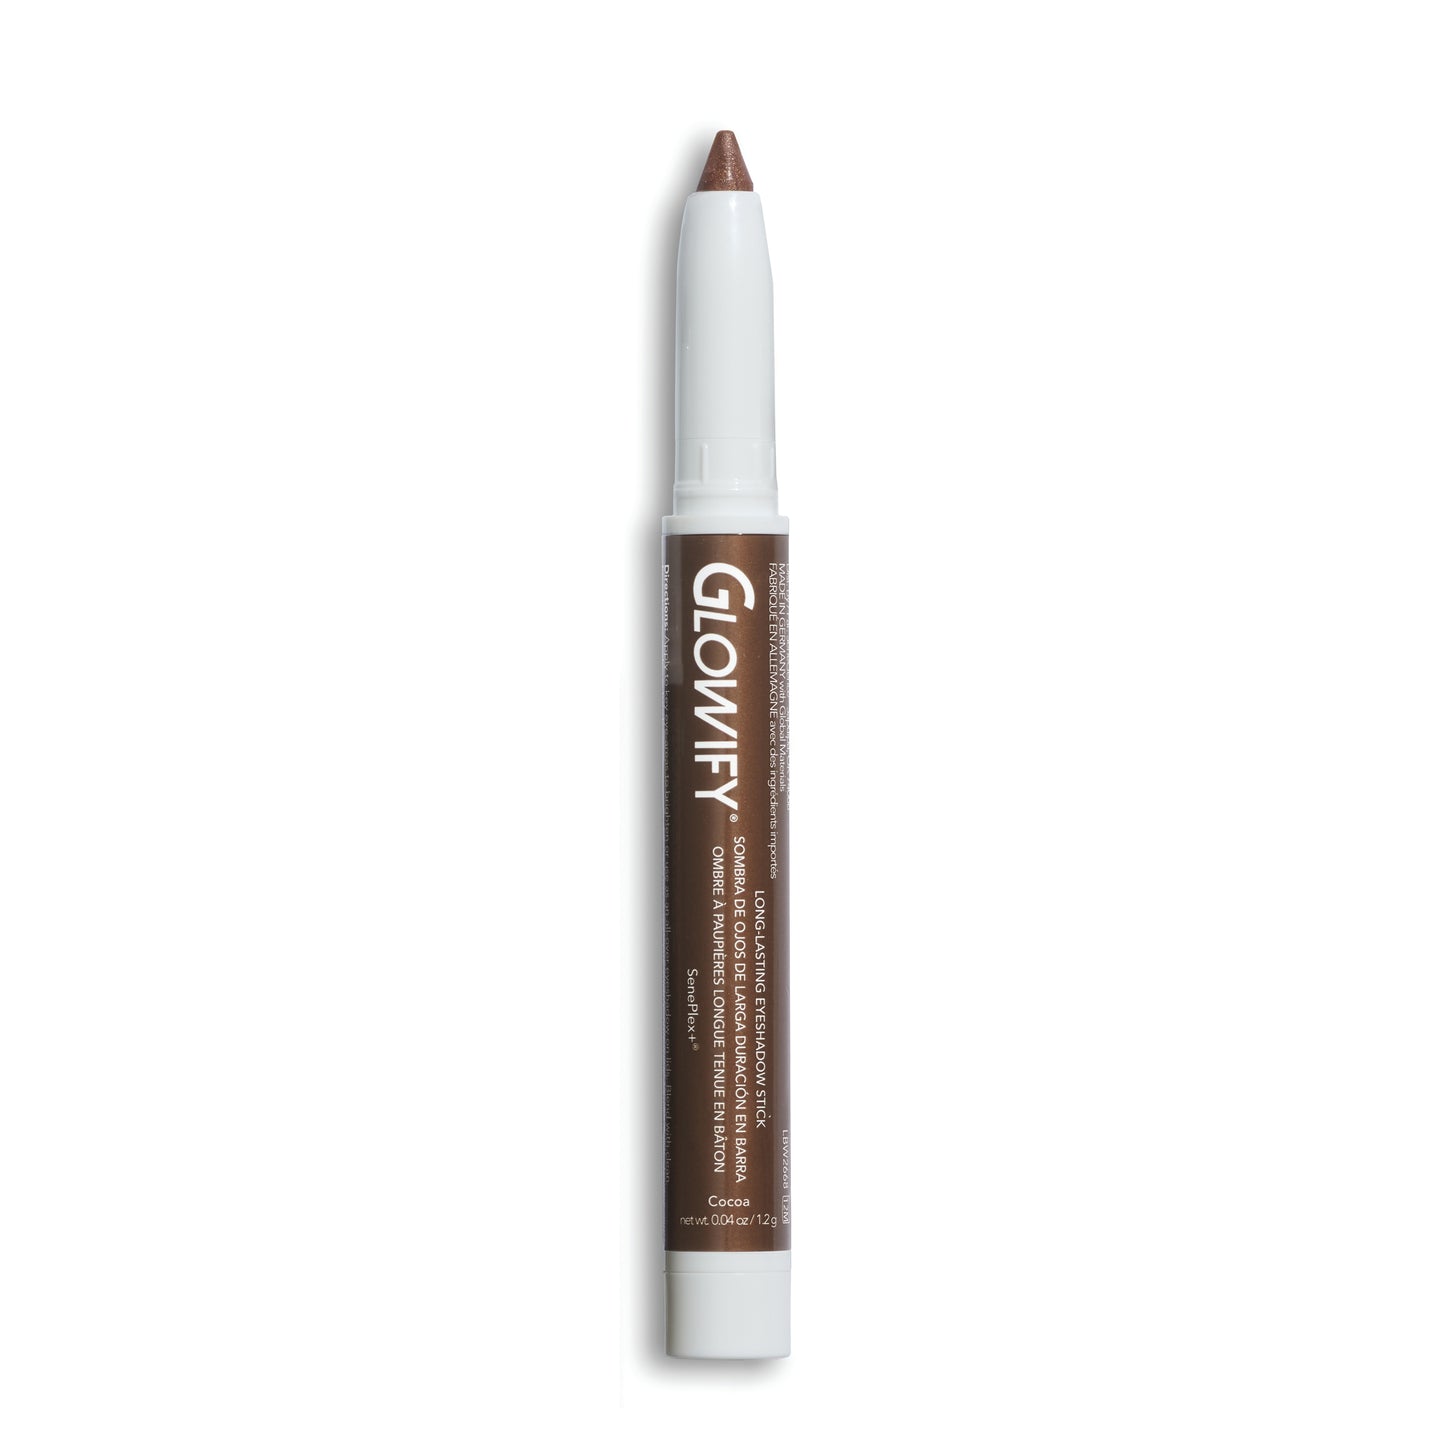 Cocoa Glowify Eyeshadow Stick